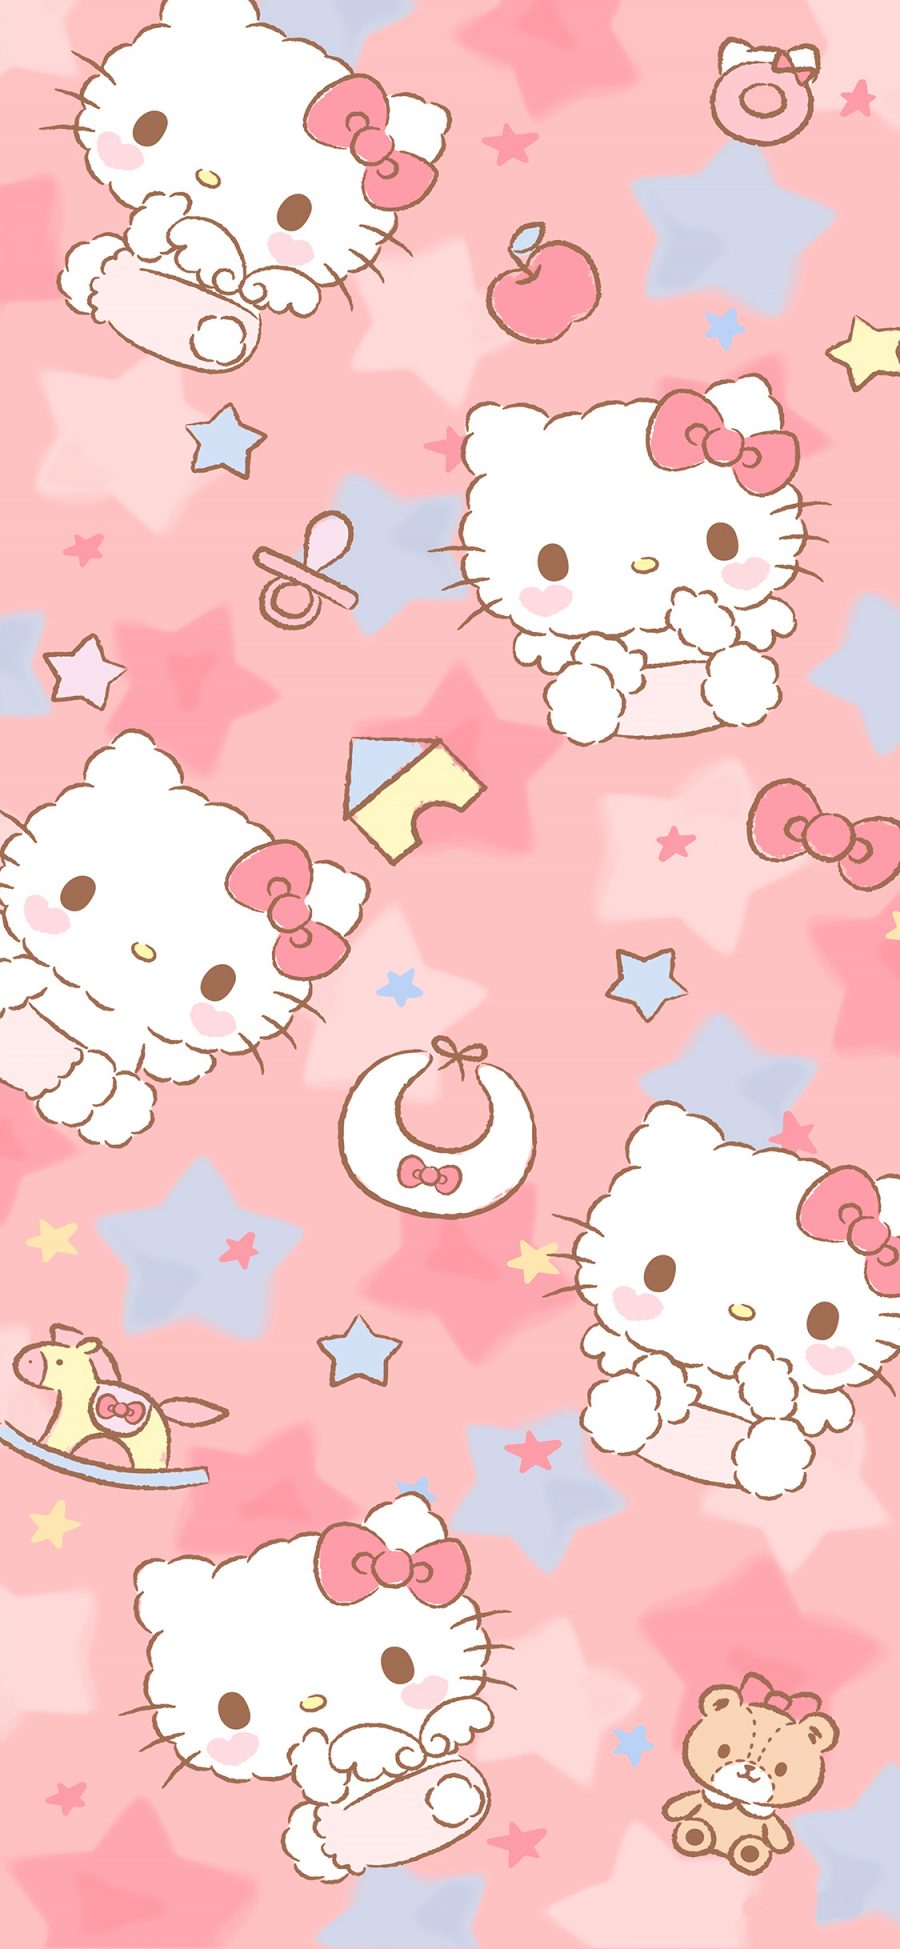 [2436×1125]hello kitty 凯特猫 粉色 木马 蝴蝶结 星星 苹果手机动漫壁纸图片